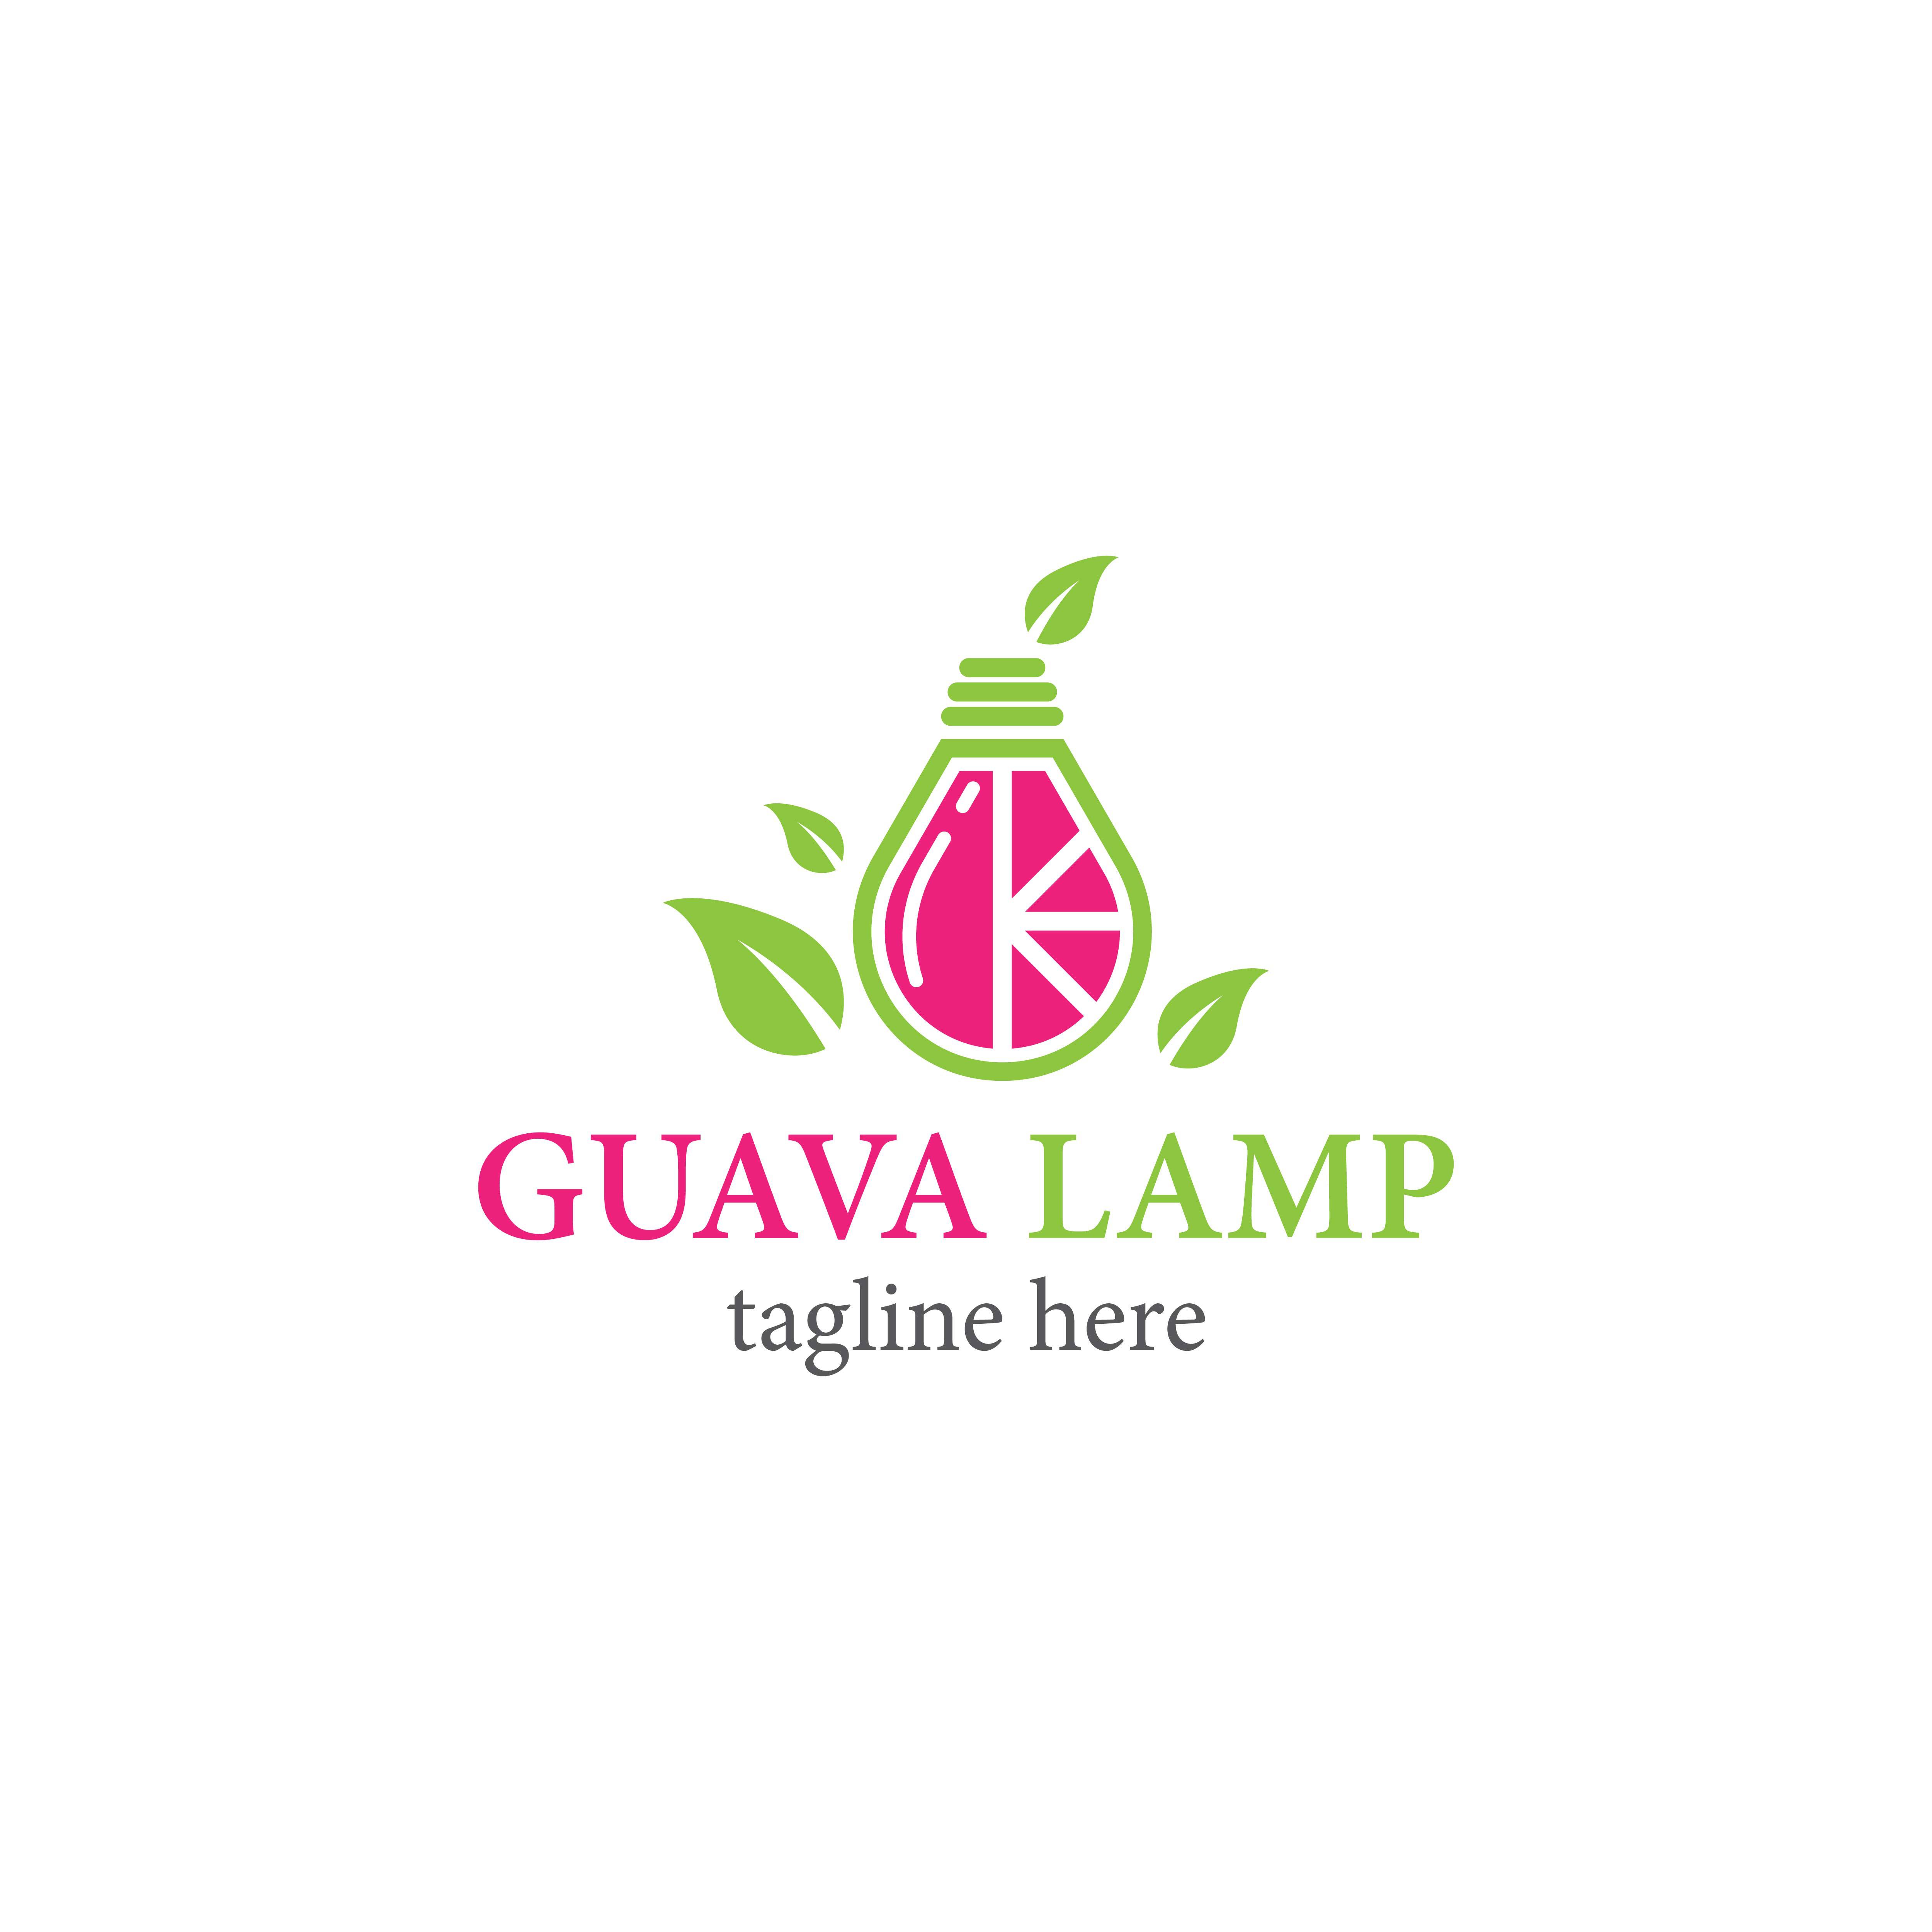 Guava lamp  logo template vector icon design